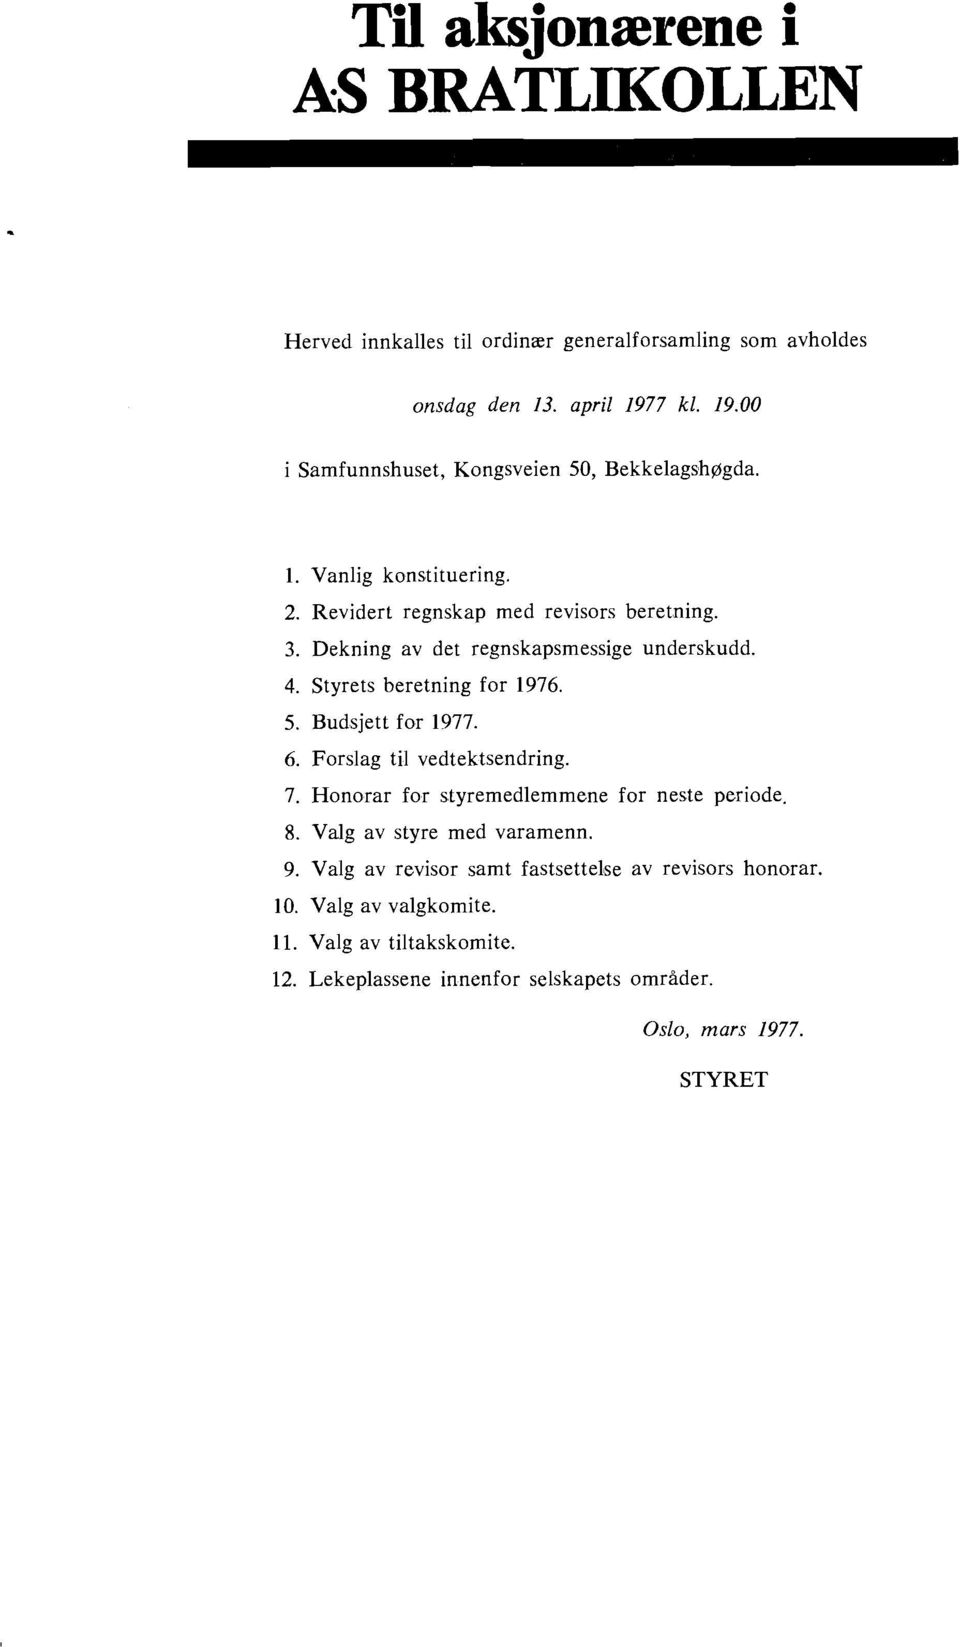 Dekning av det regnskapsmessige underskudd. 4. Styrets beretning for 1976. 5. Budsjett for 1977. 6. Forslag ti1 vedtektsendring. 7.